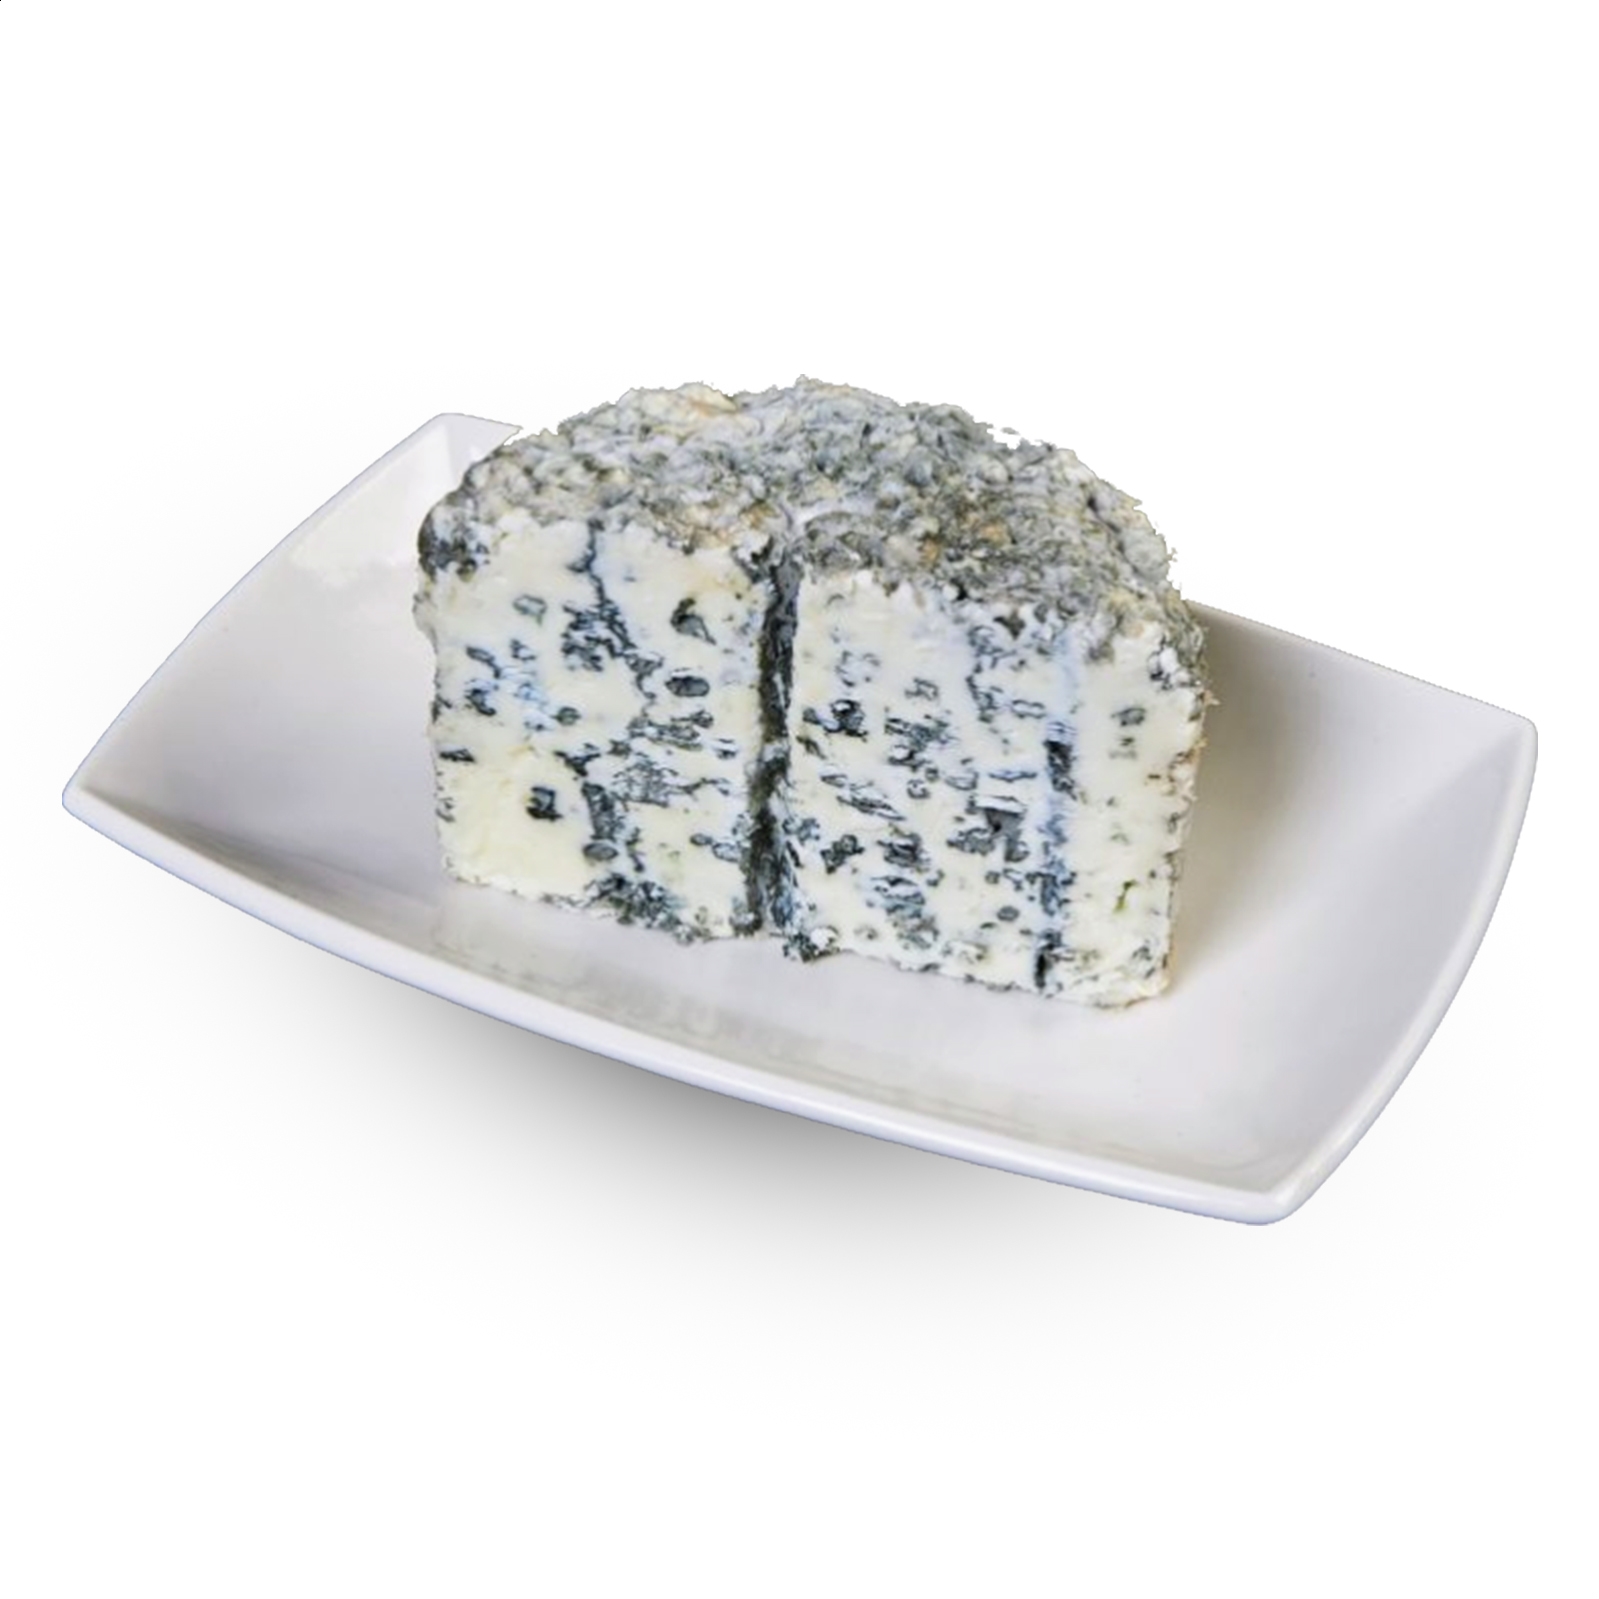 Puebla Luis - Cuña de queso azul de oveja de leche pasteurizada 500g aprox, 4uds